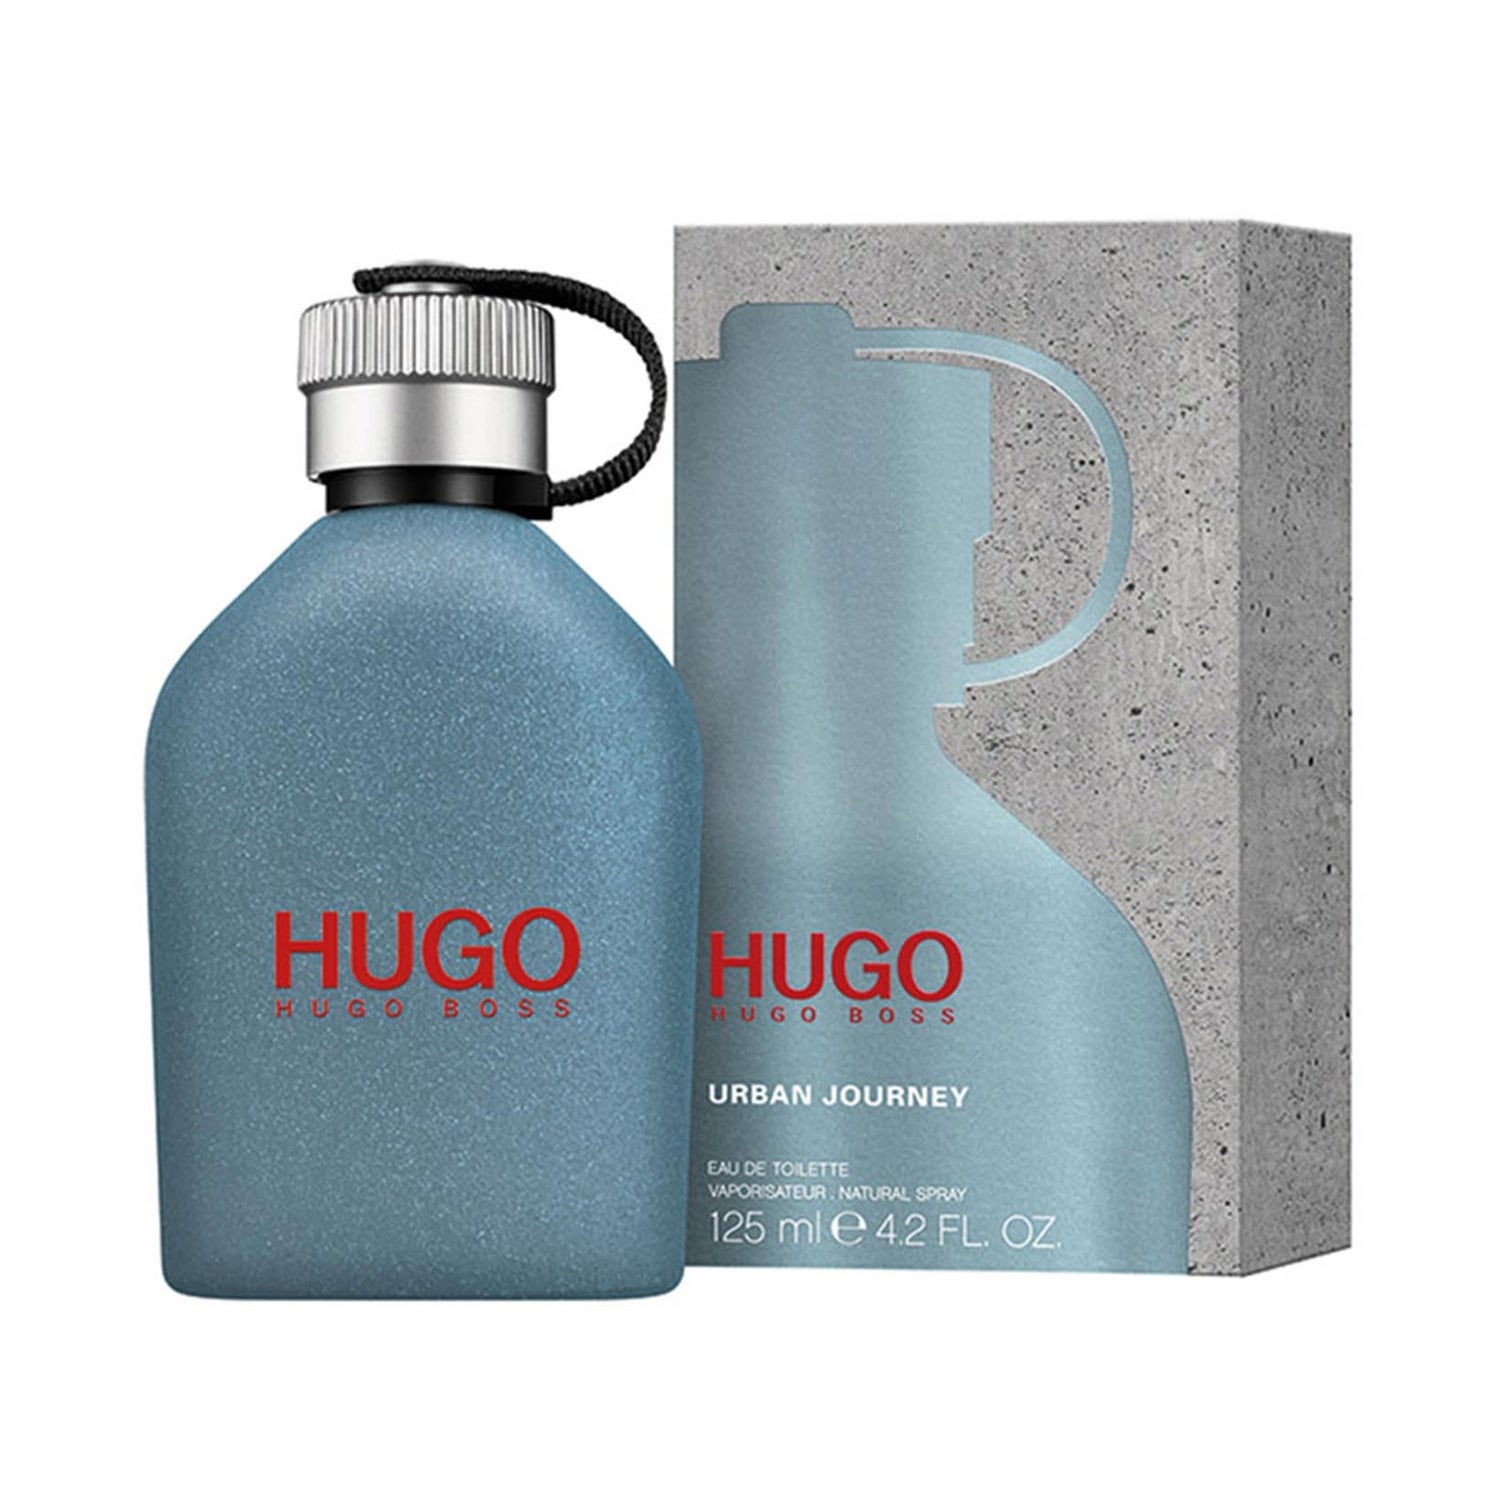 hugo boss perfume 125ml price